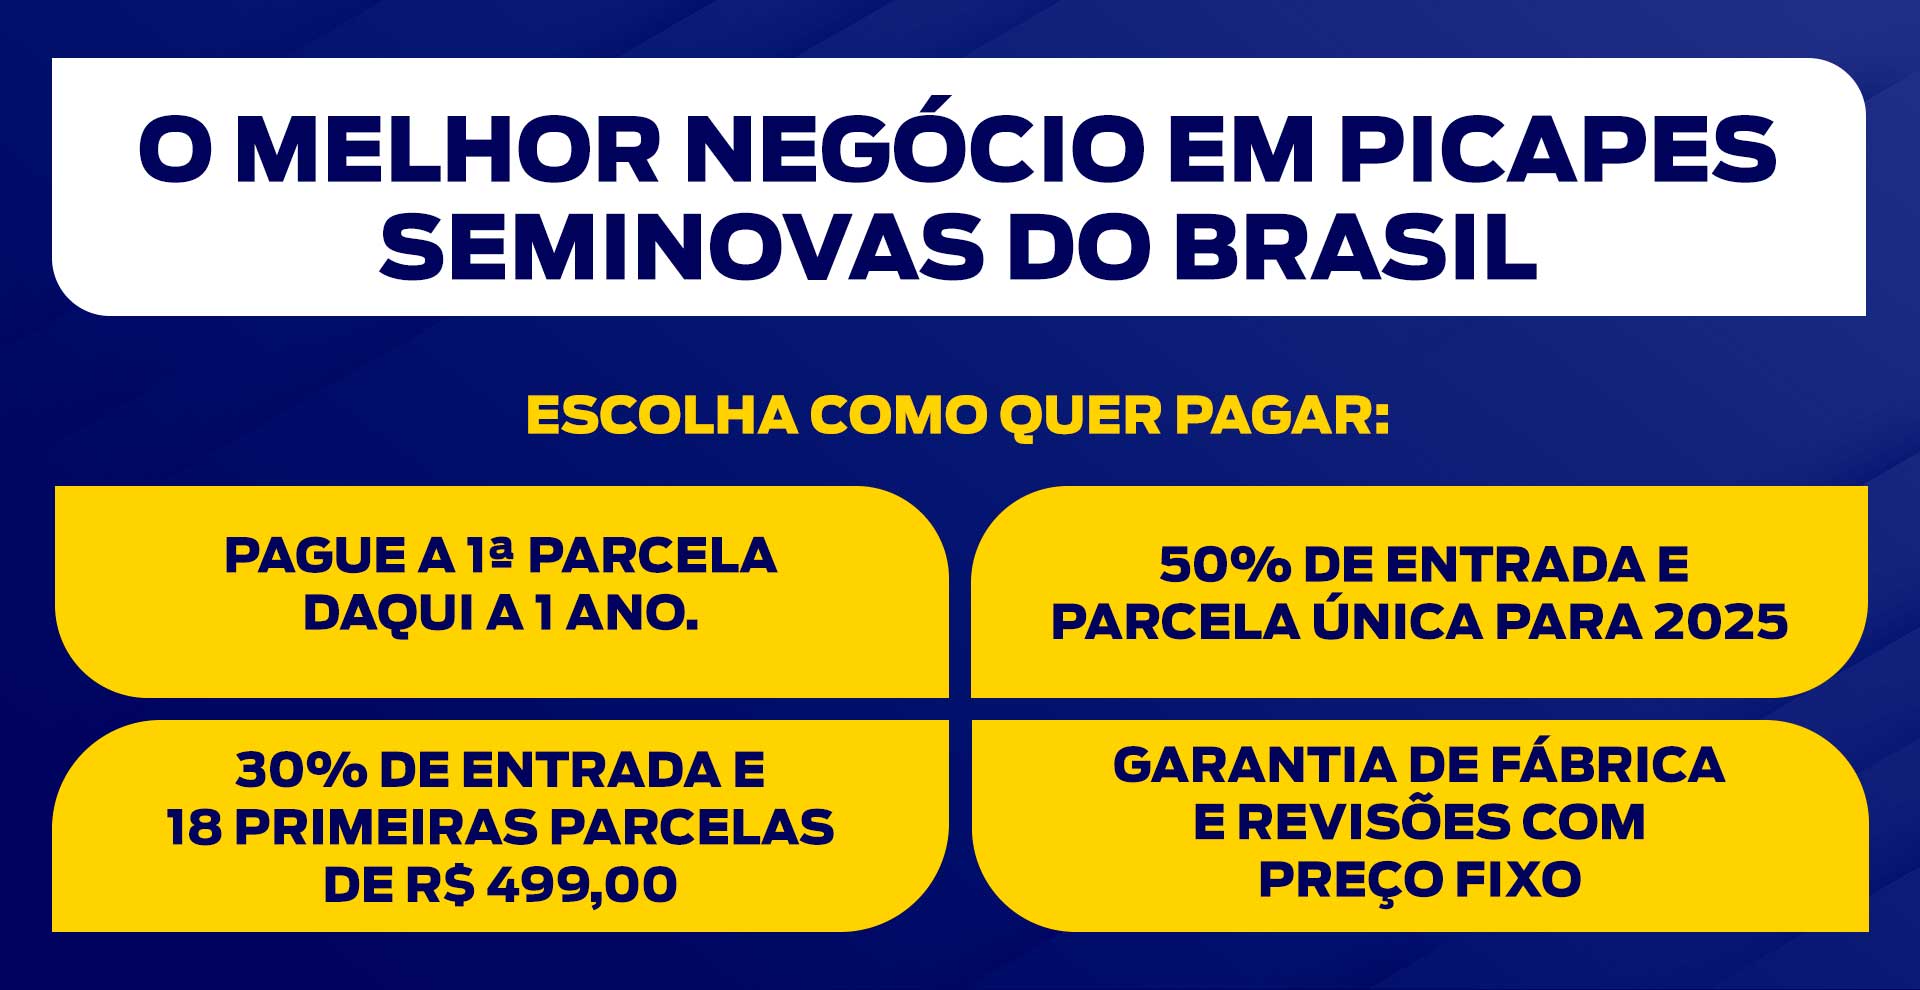 Melhor negócio em Picapes Seminovas no Brasil